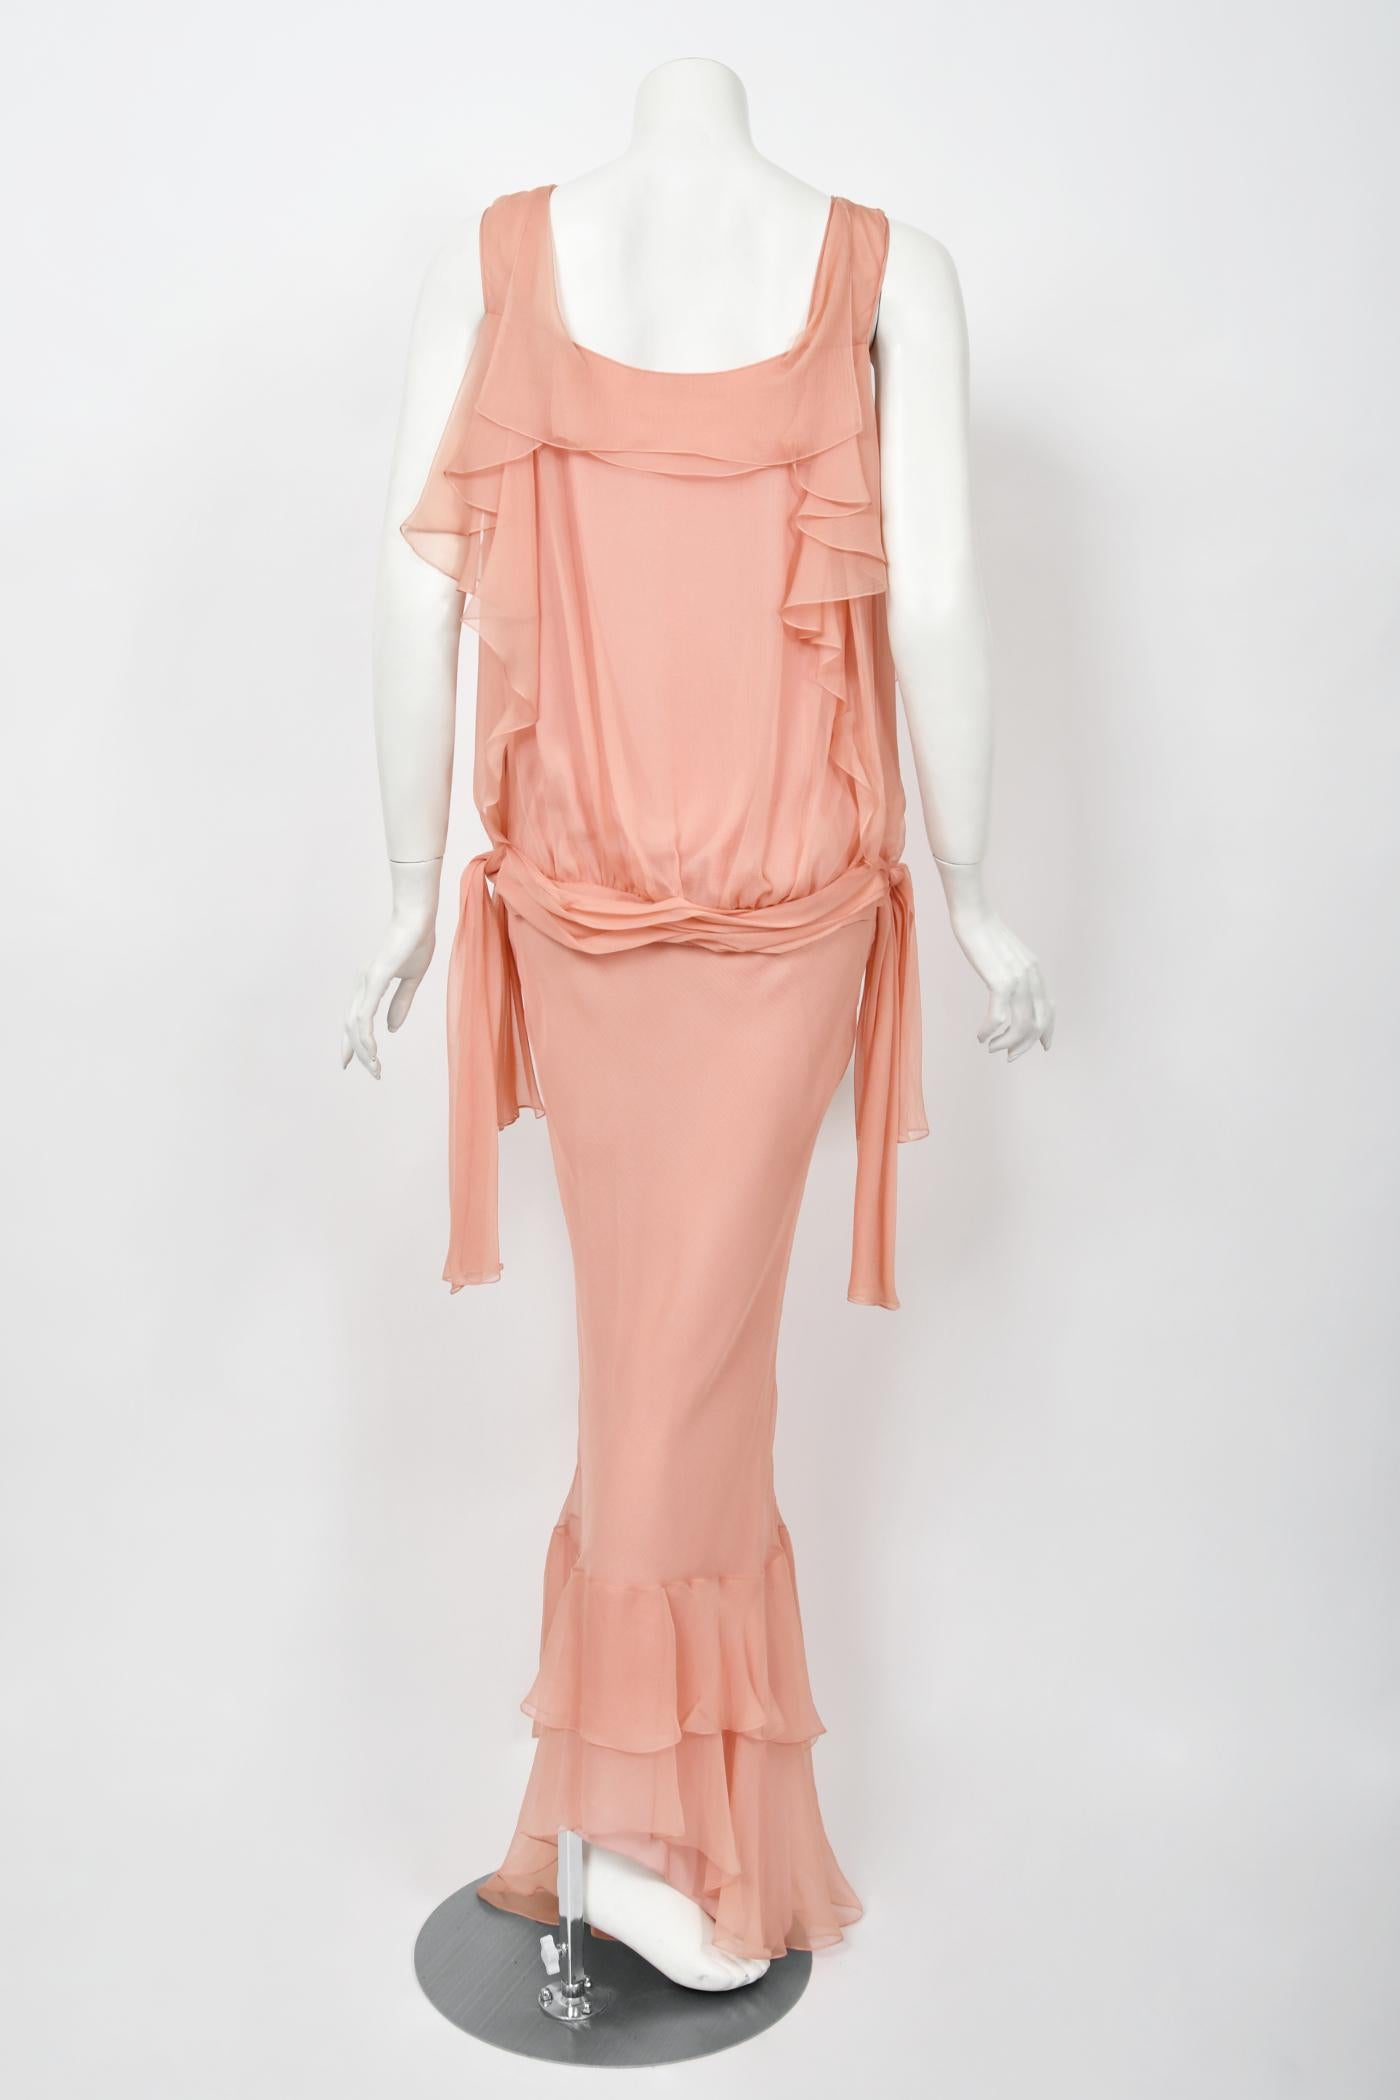 2008 John Galliano Blassrosa halbtransparentes Kleid aus Seidenchiffon mit drapierten Rüschen im Schrägschnitt 12